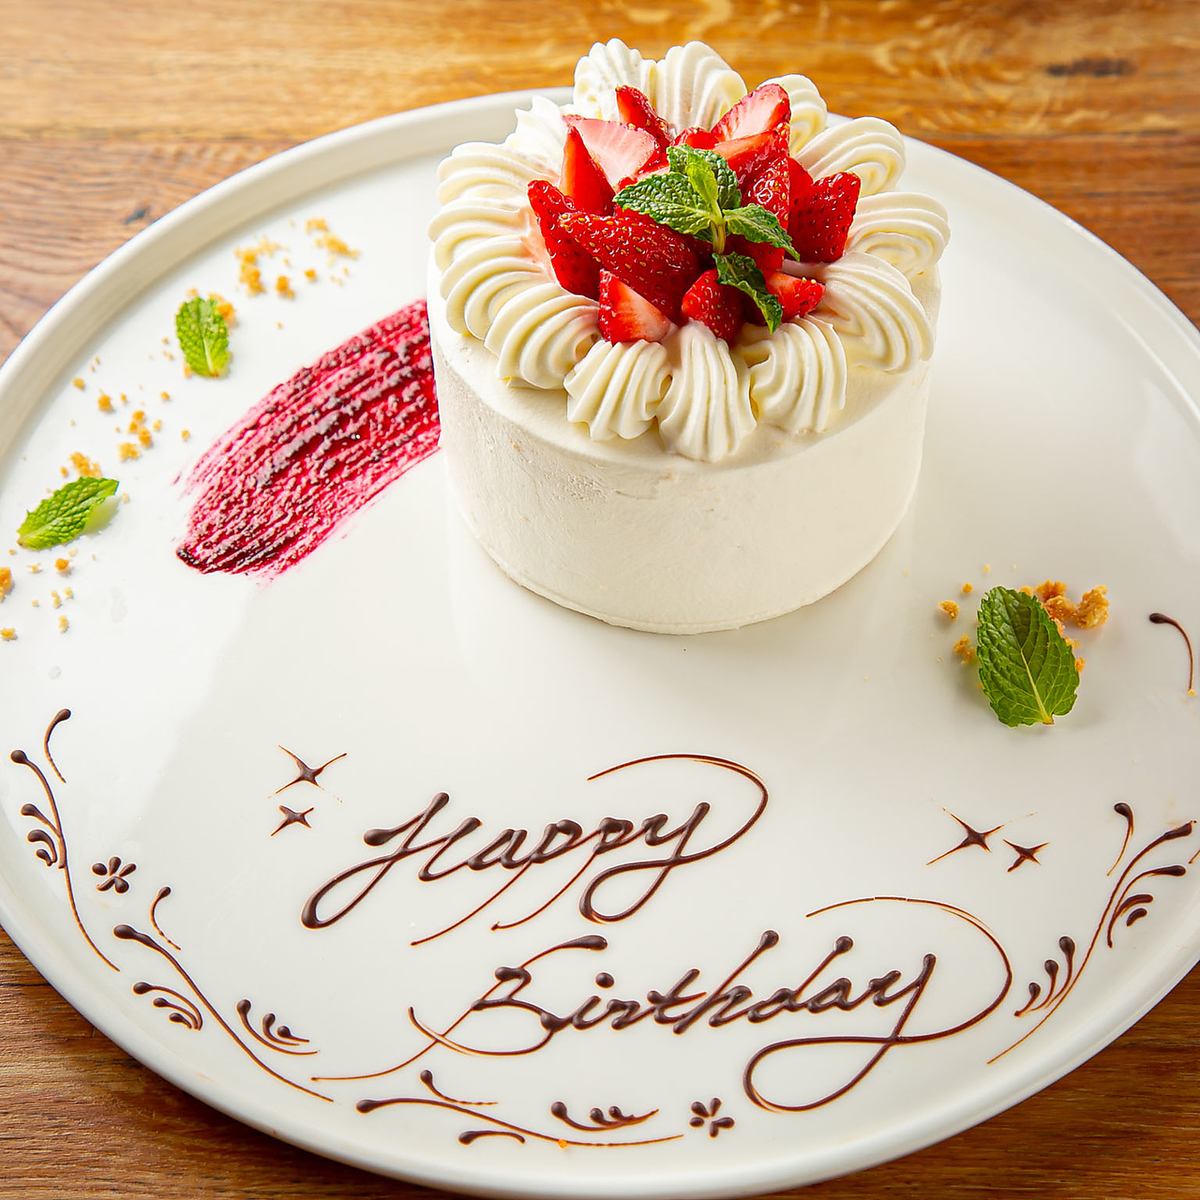 装饰蛋糕可用于庆祝生日和纪念日。